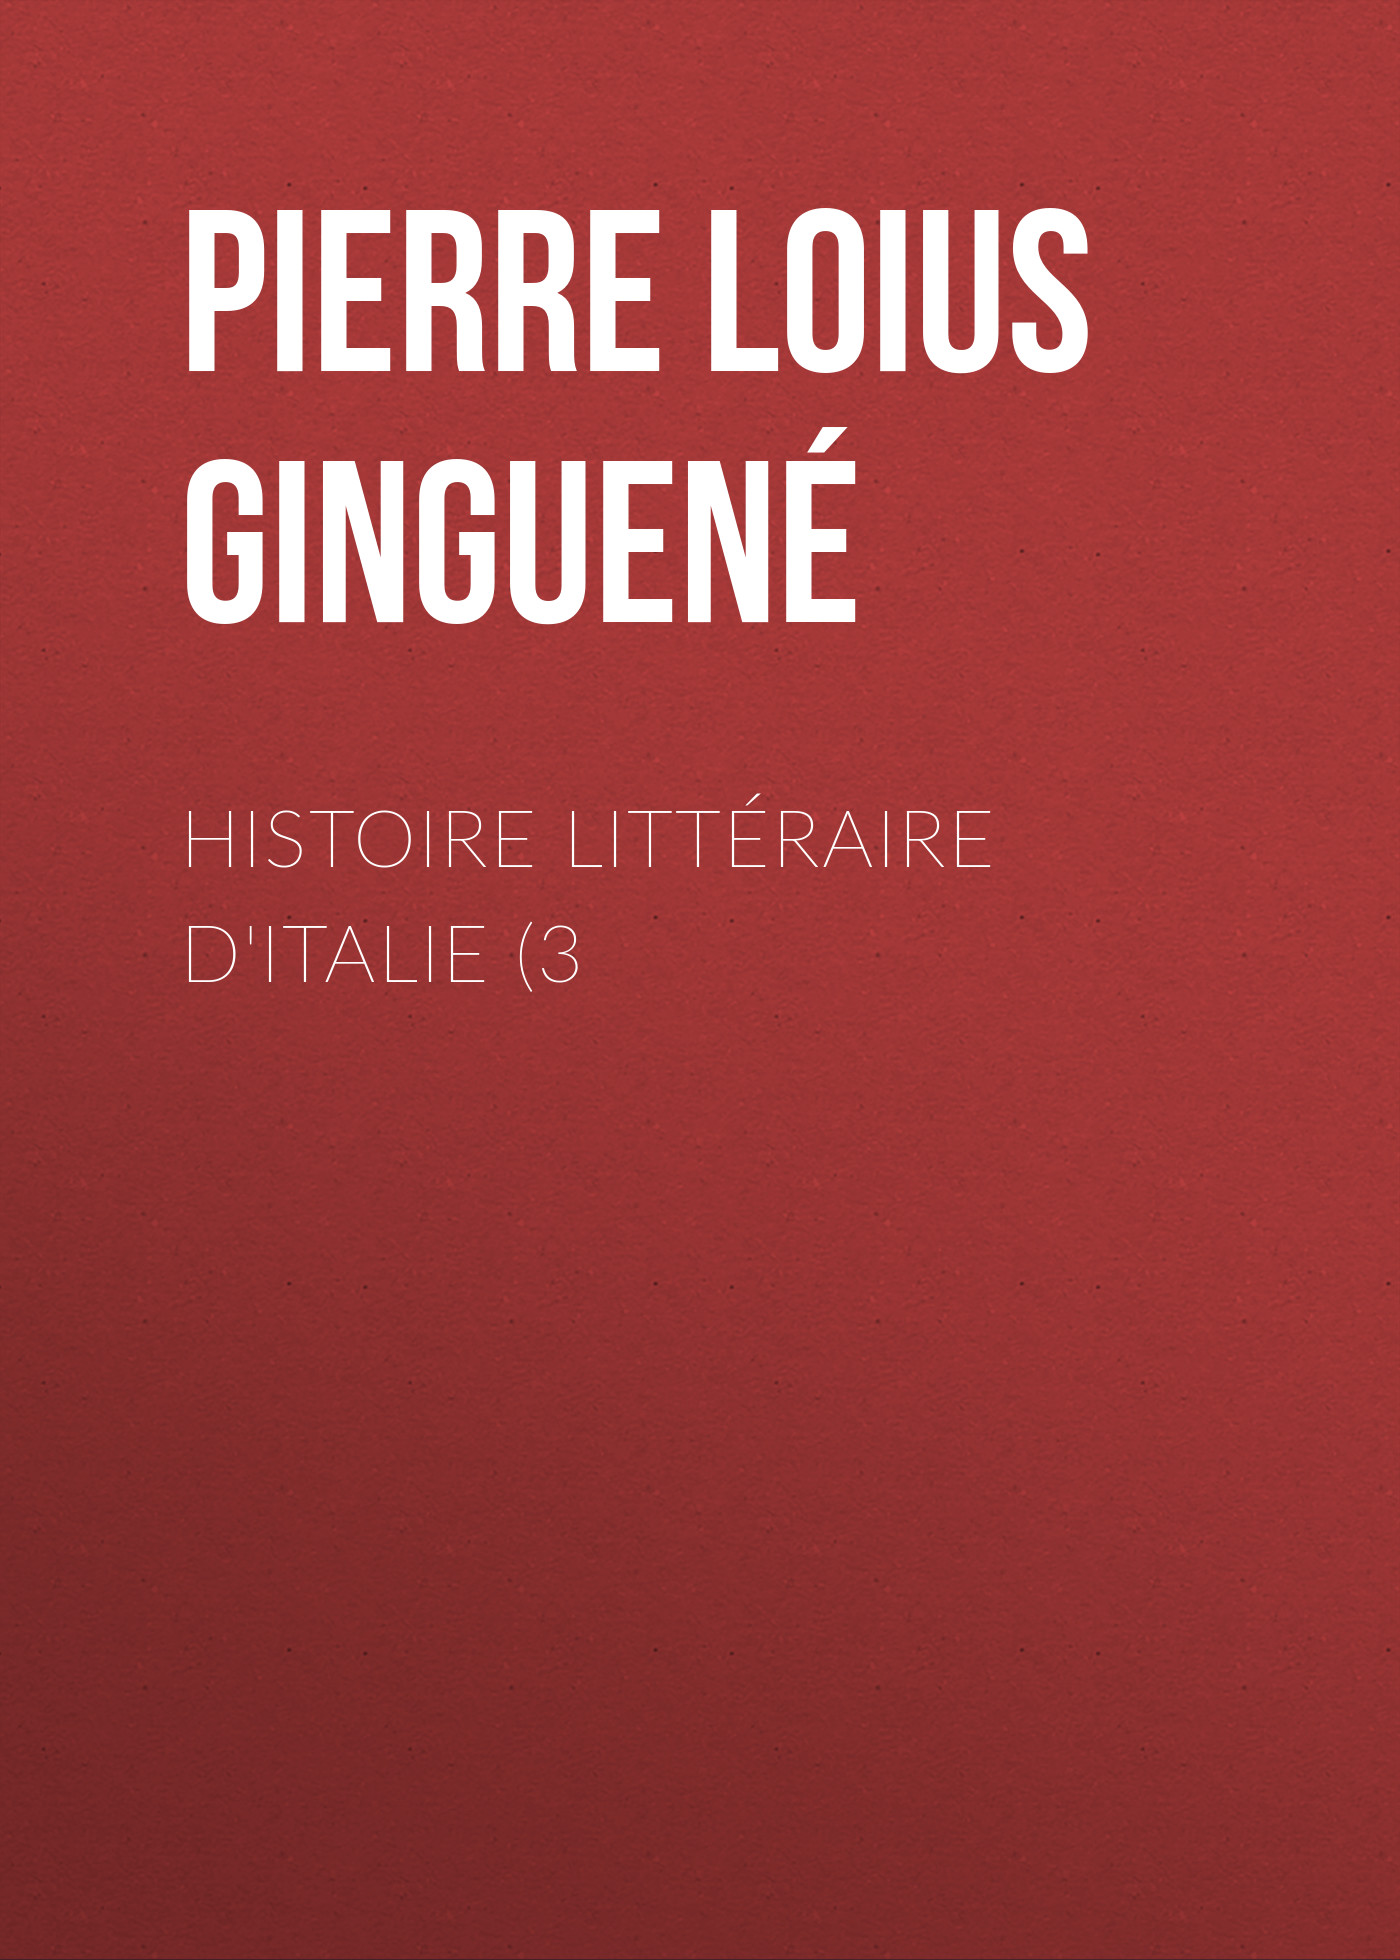 Книга Histoire littéraire d'Italie (3 из серии , созданная Pierre Ginguené, может относится к жанру Критика, Зарубежная старинная литература, Зарубежная классика. Стоимость электронной книги Histoire littéraire d'Italie (3 с идентификатором 24937429 составляет 0 руб.